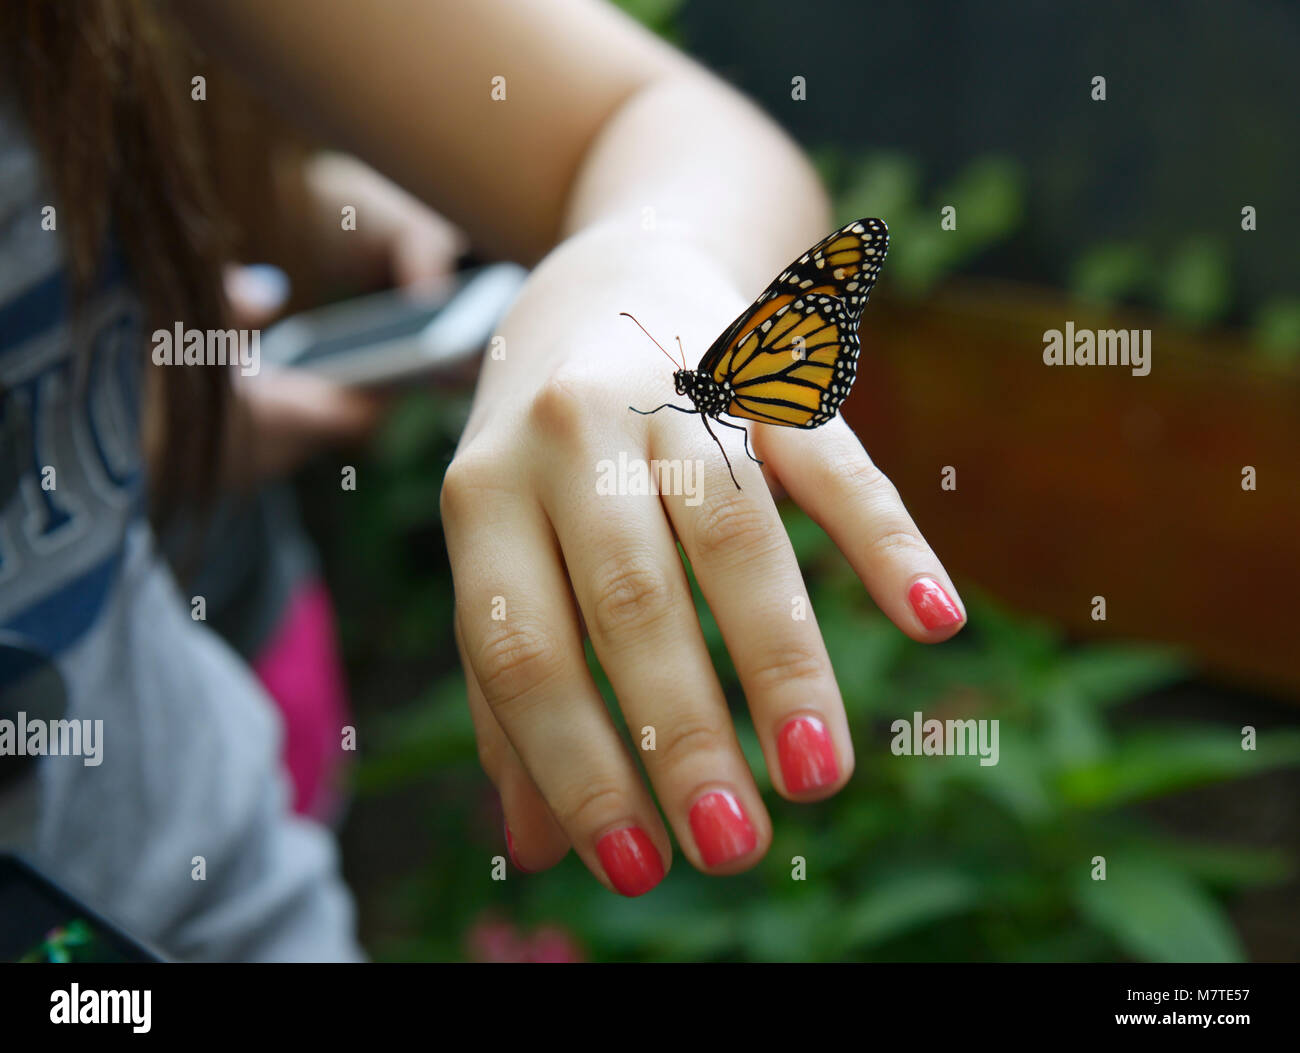 Chica con mariposa monarca en su mano, La Paz Waterfall Gardens, Costa Rica Foto de stock